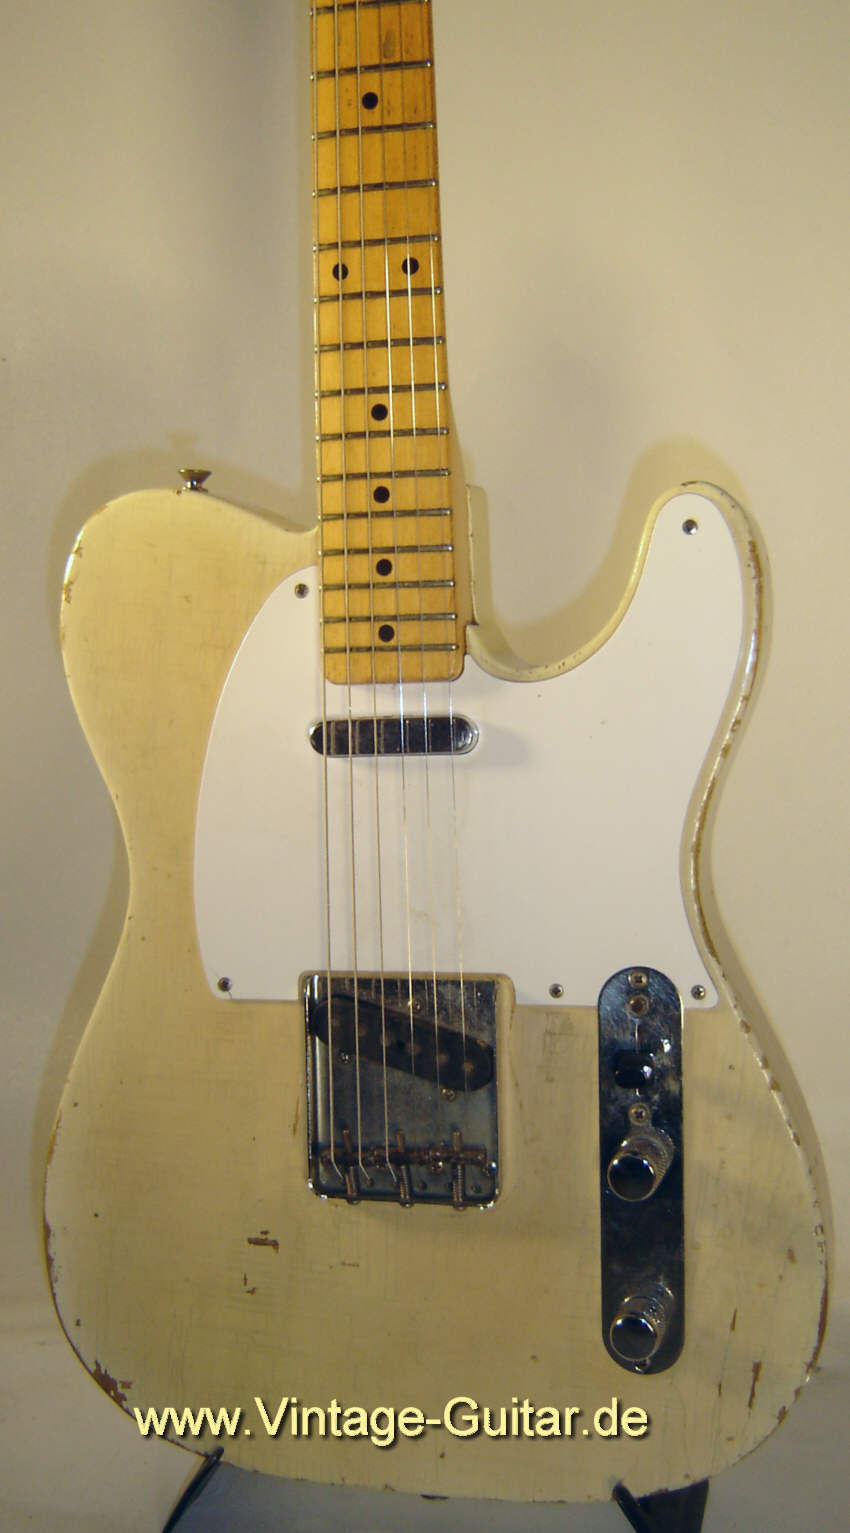 Fender_Telecaster_1957_blond_body.jpg